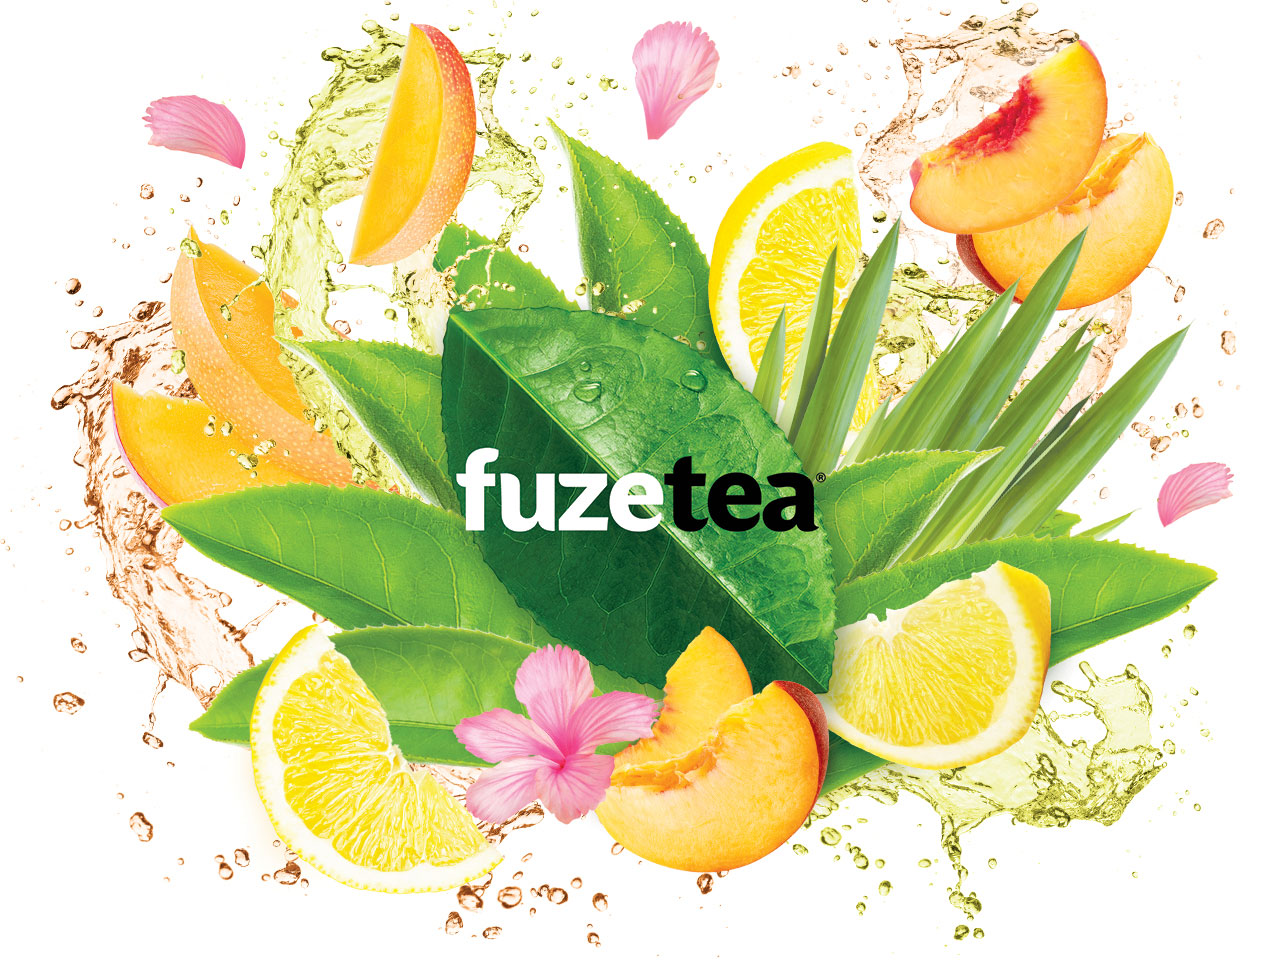 FuzeTea Promotion project image